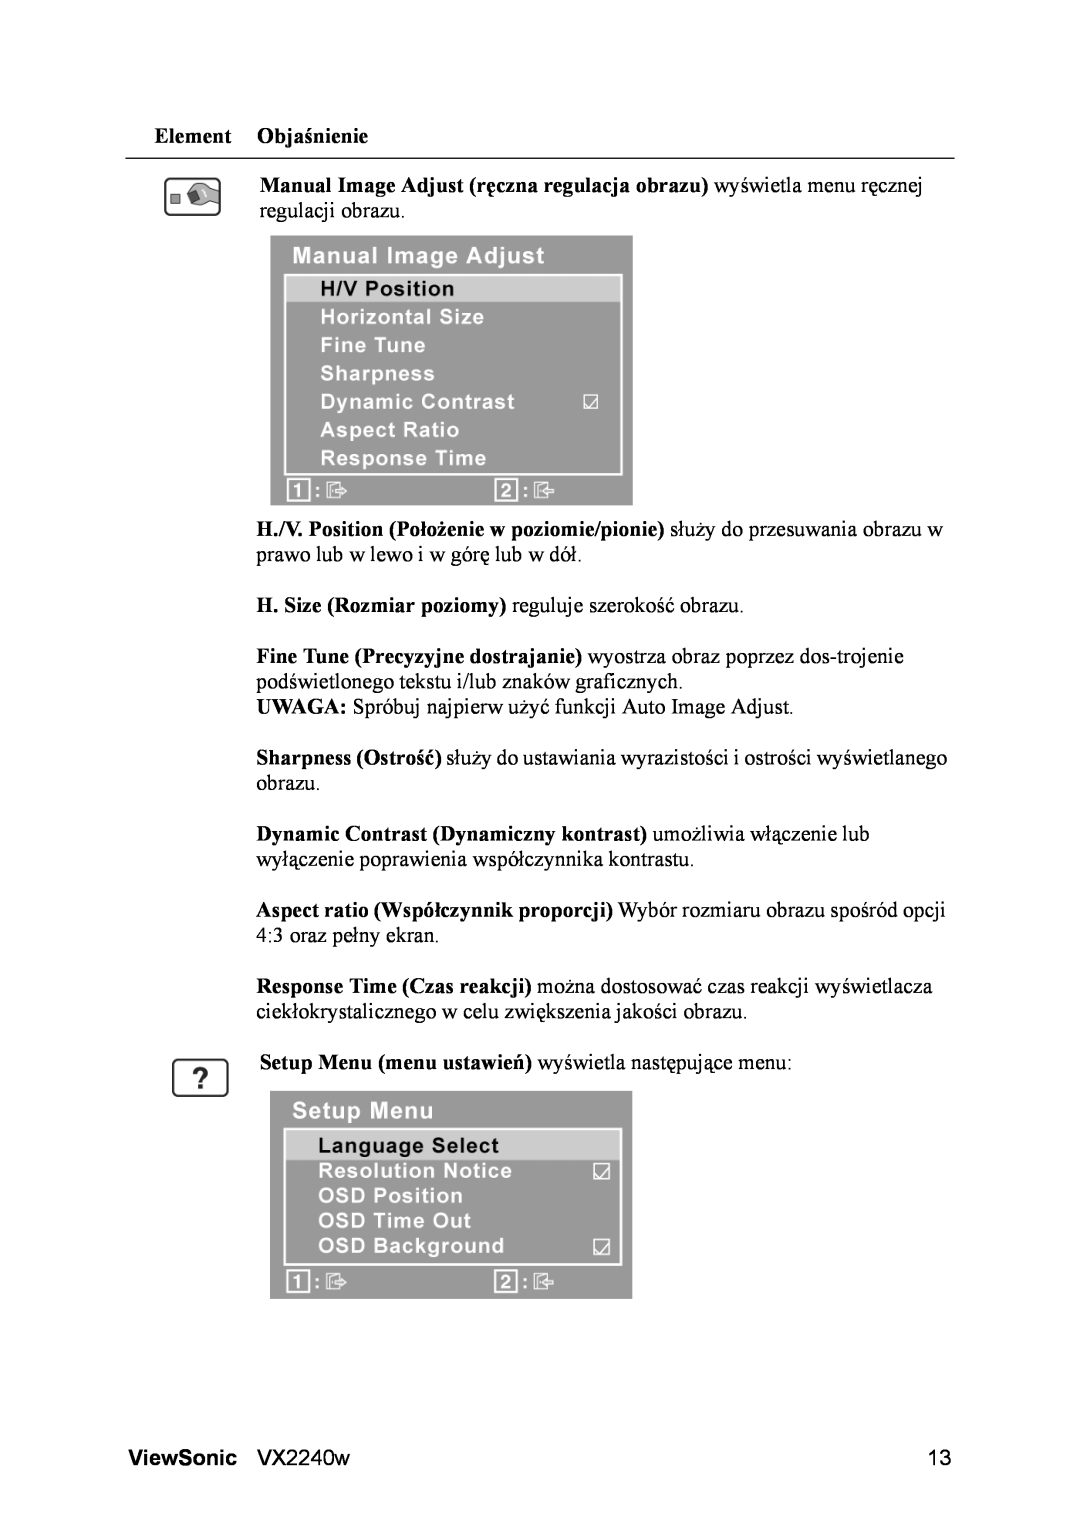 ViewSonic VX2240w H. Size Rozmiar poziomy reguluje szerokość obrazu, Setup Menu menu ustawień wyświetla następujące menu 